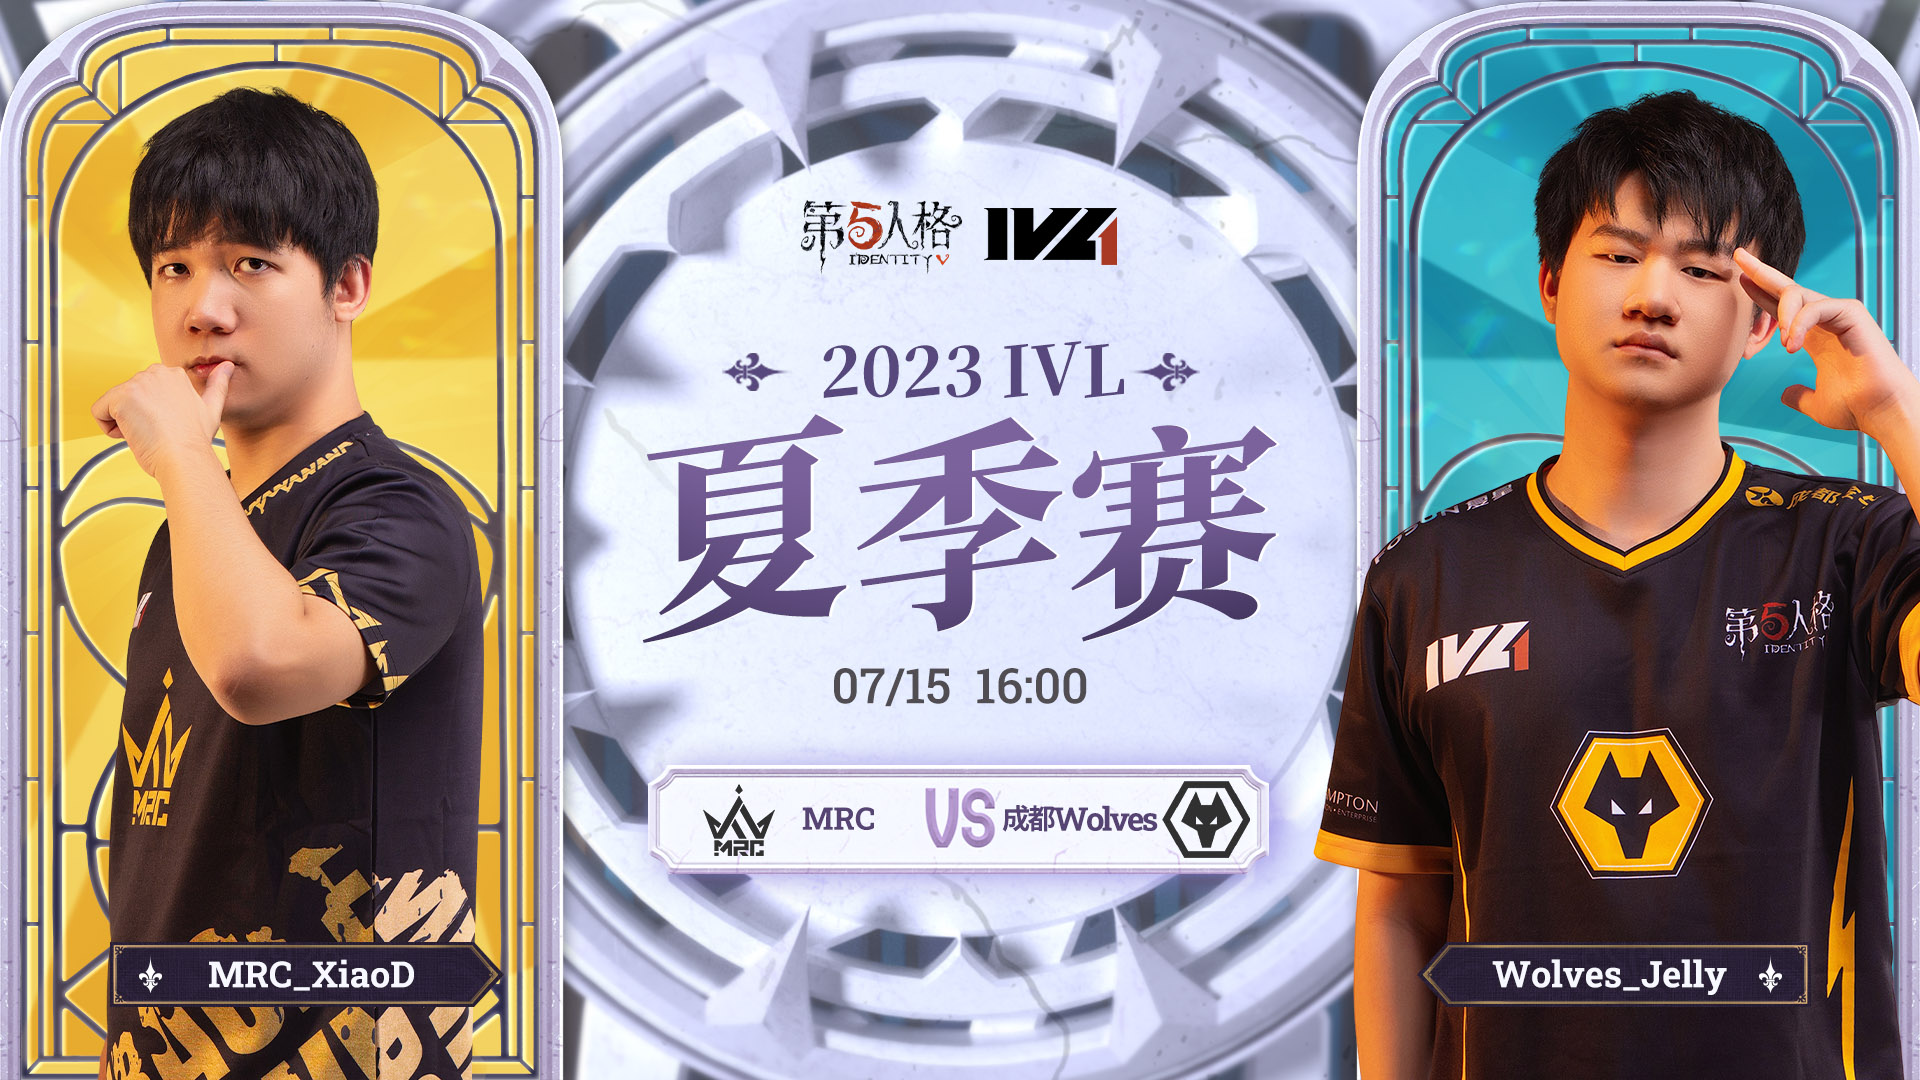 【2023IVL】夏季赛W6D2录像 MRC vs 成都Wolves